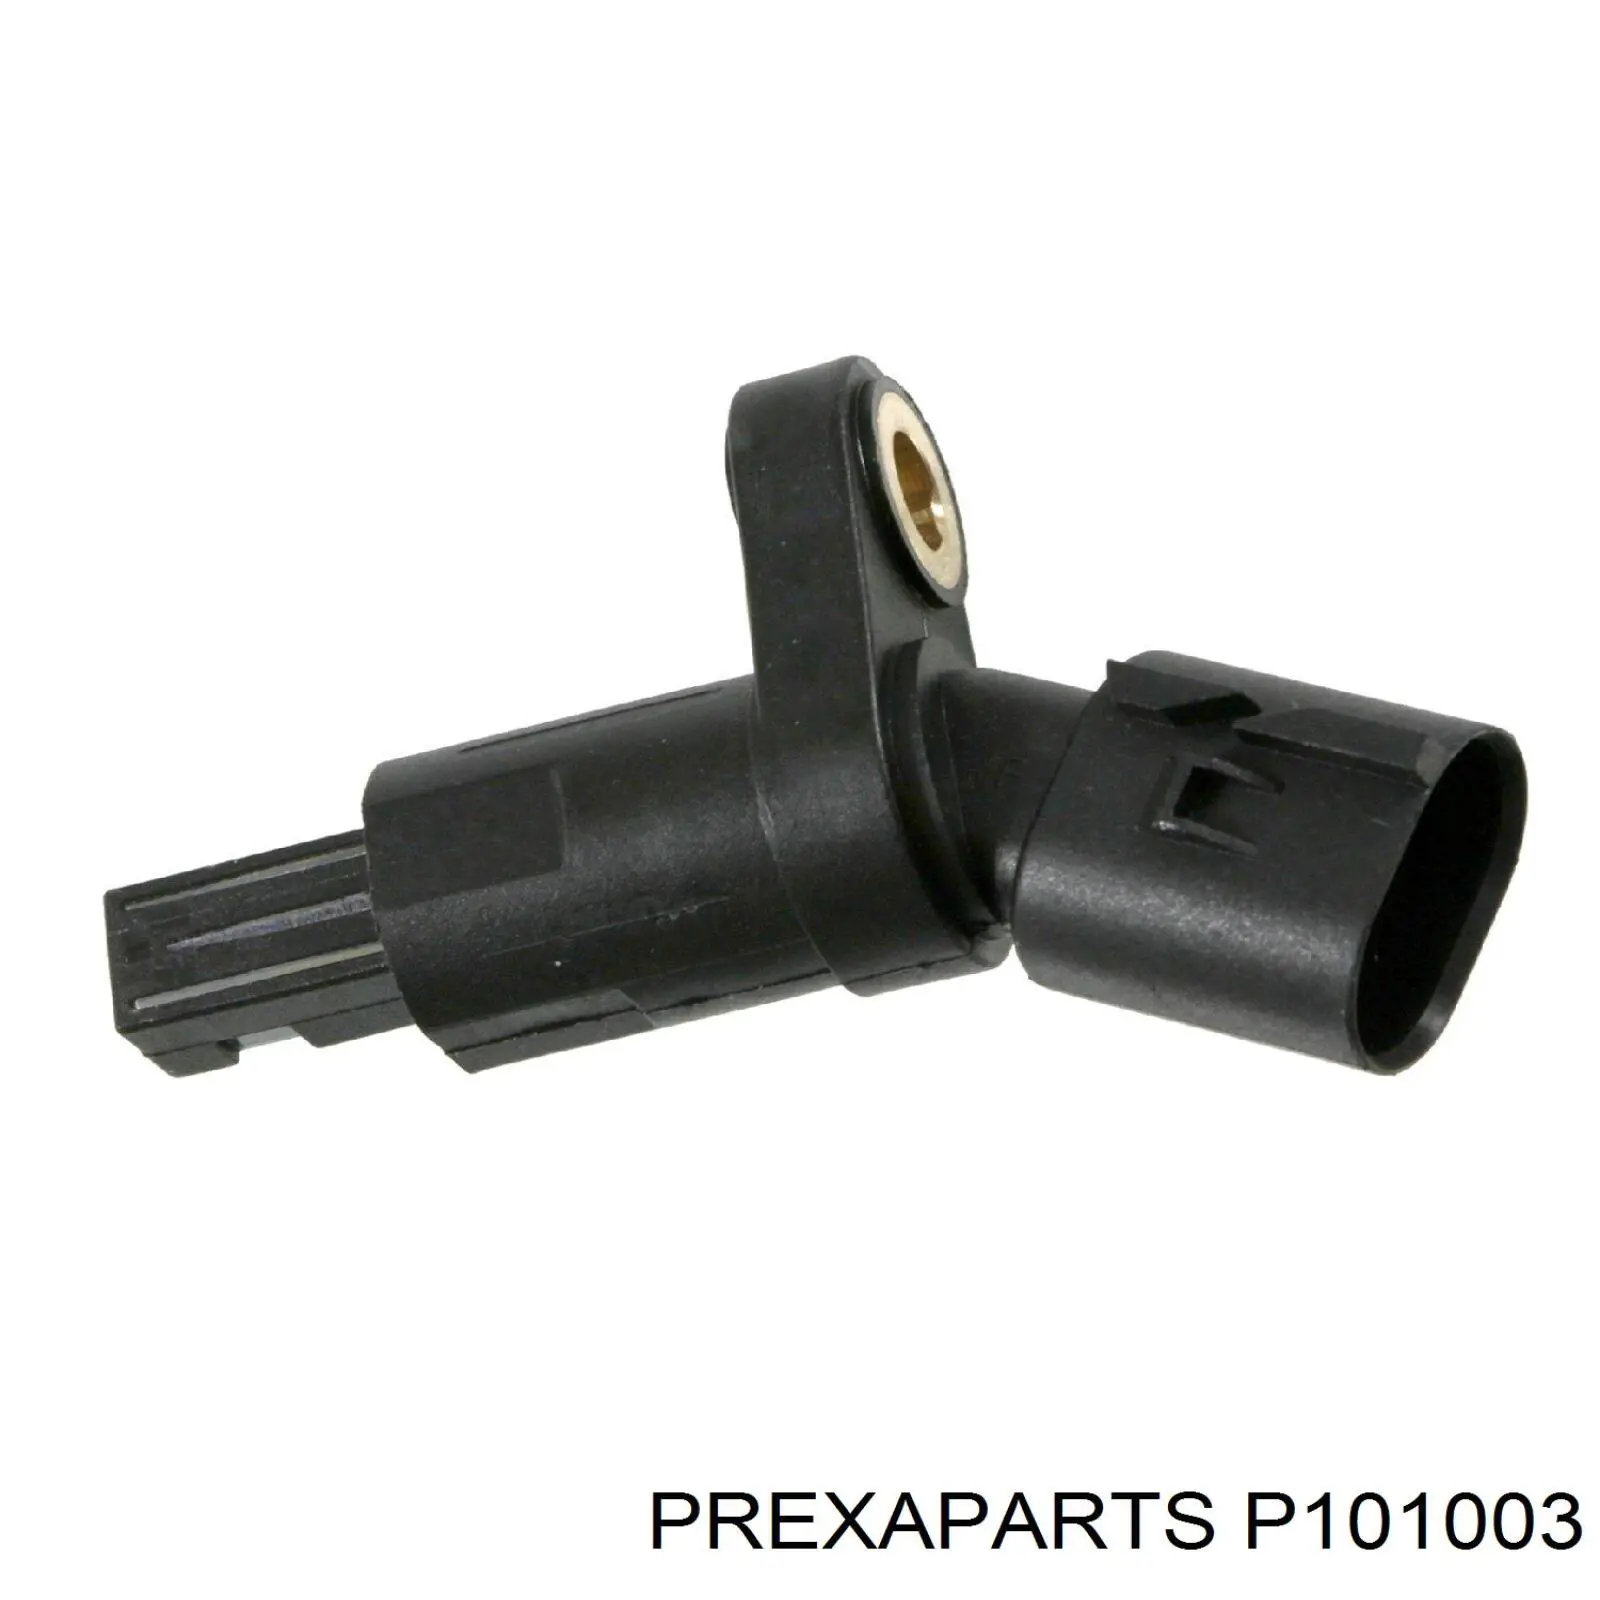 P101003 Prexaparts датчик абс (abs задний)